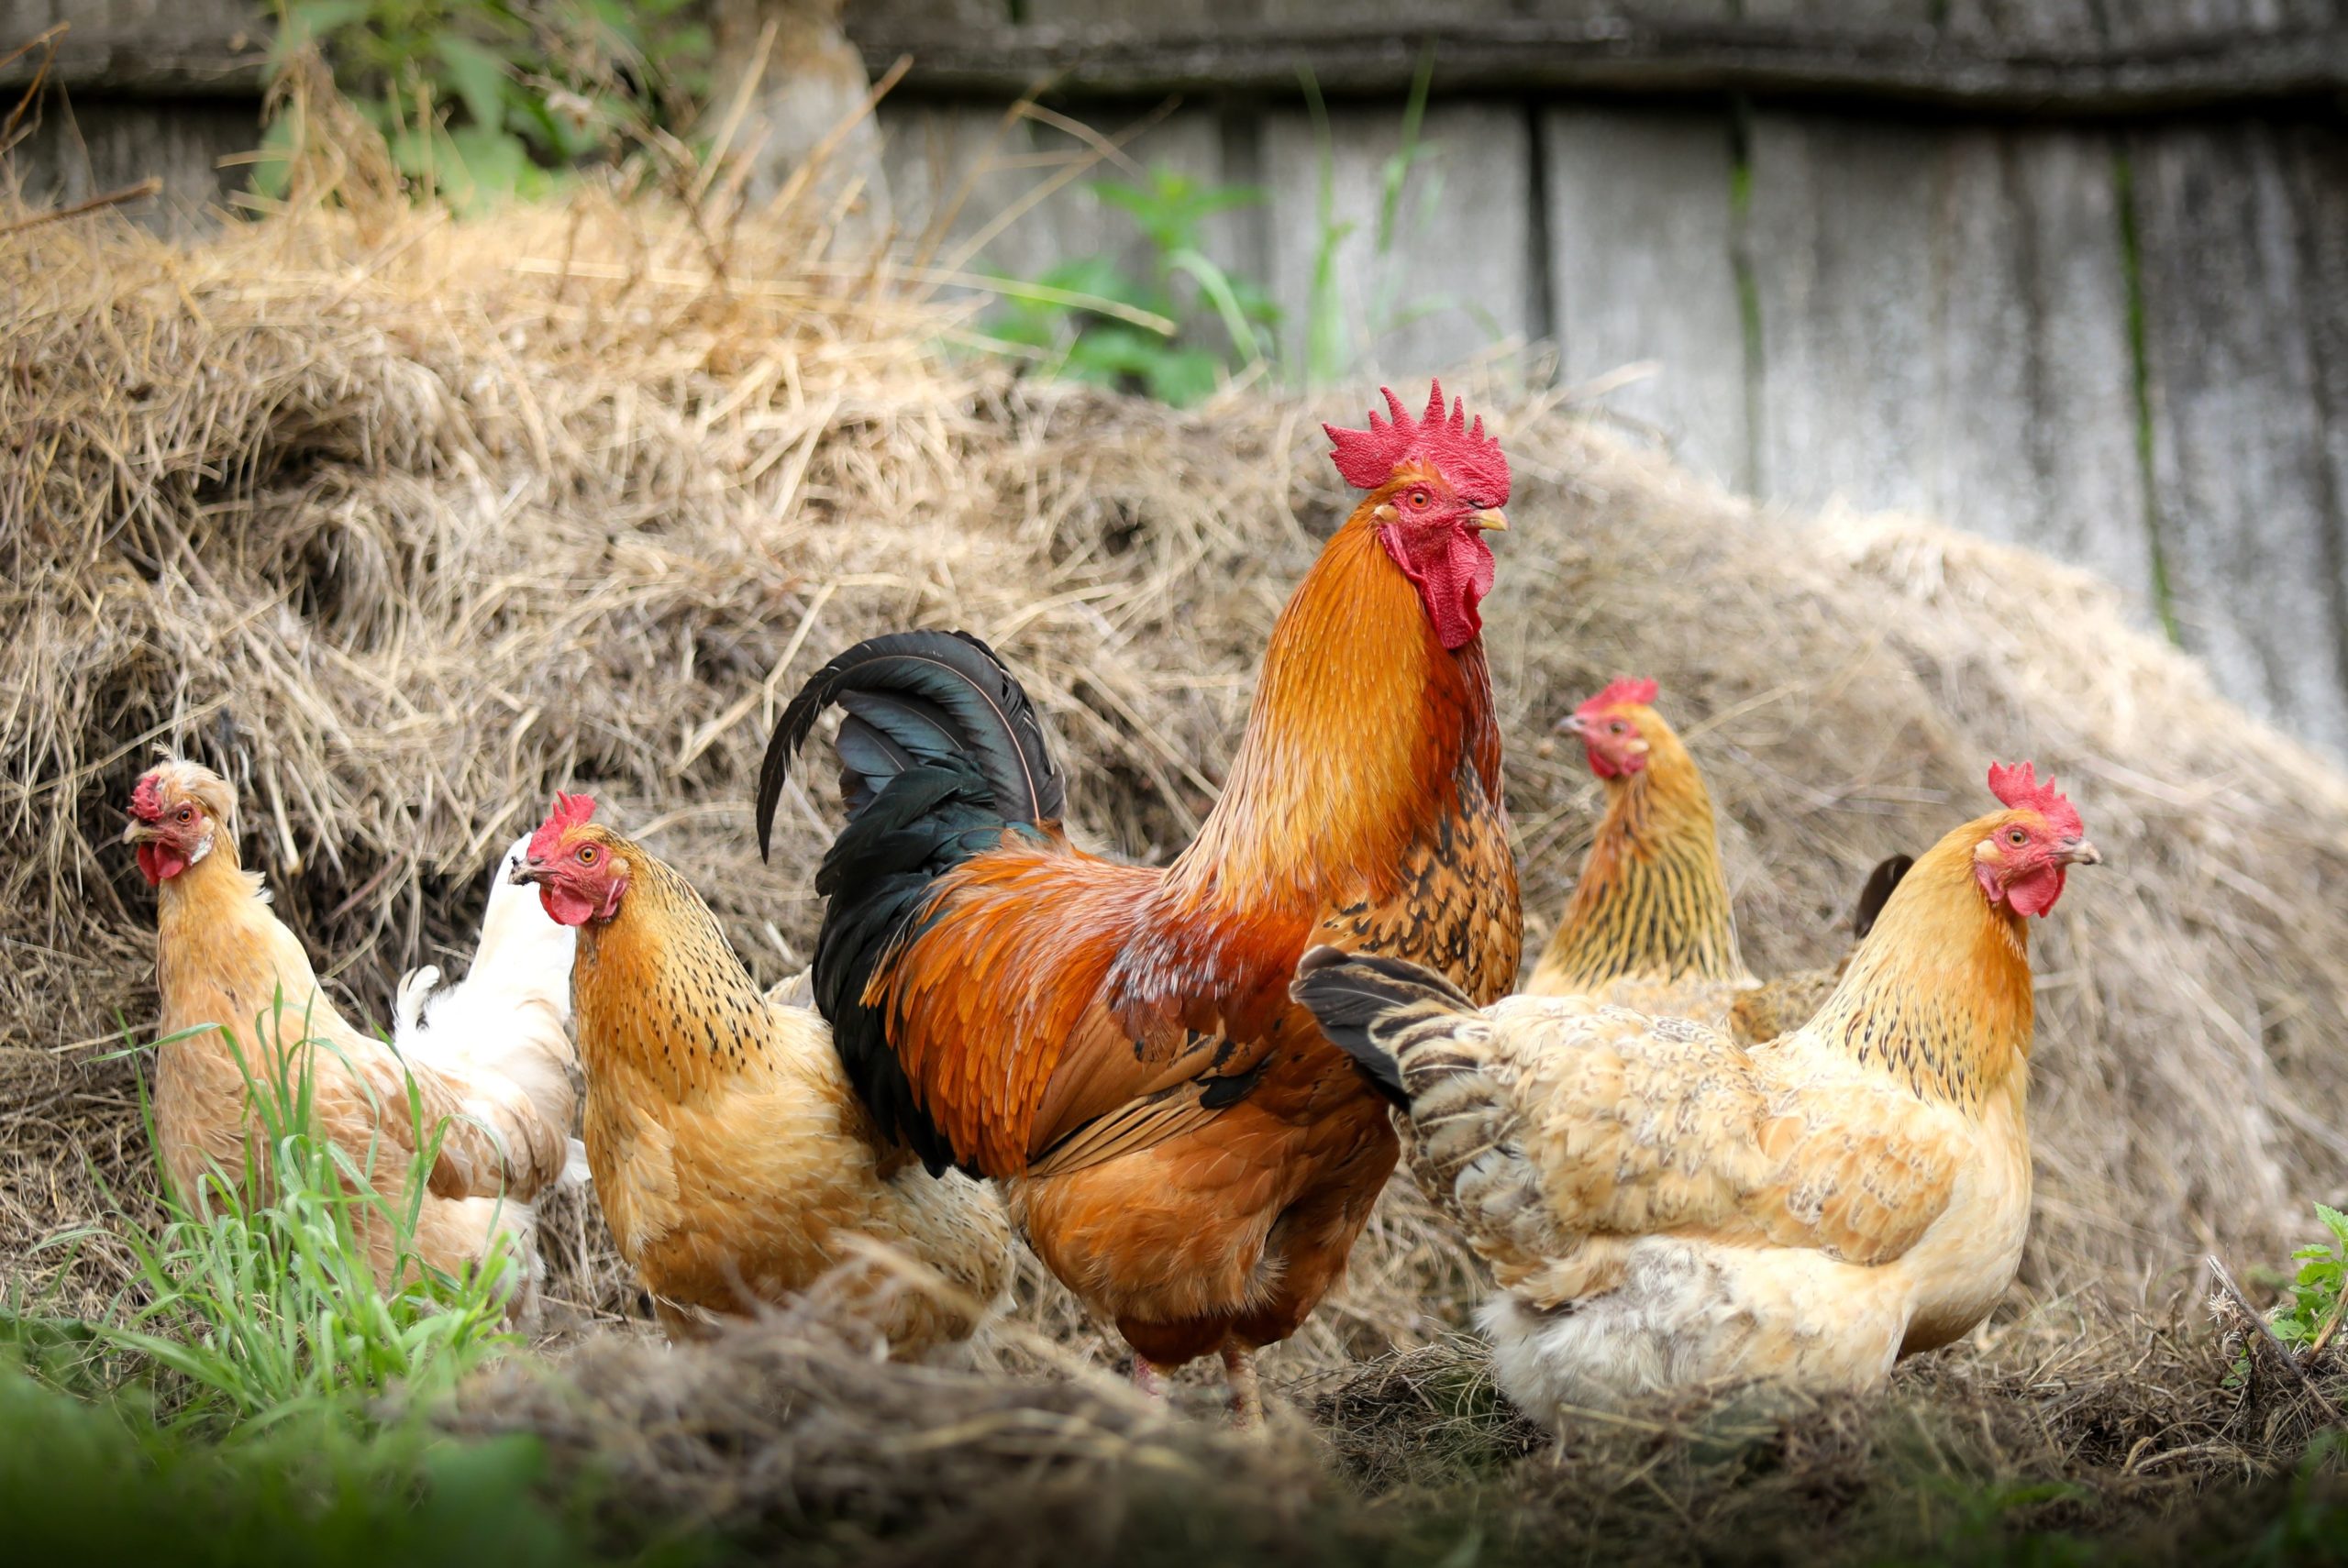 élevage de poulet qui renvoie a une forme d'agriculture urbaine